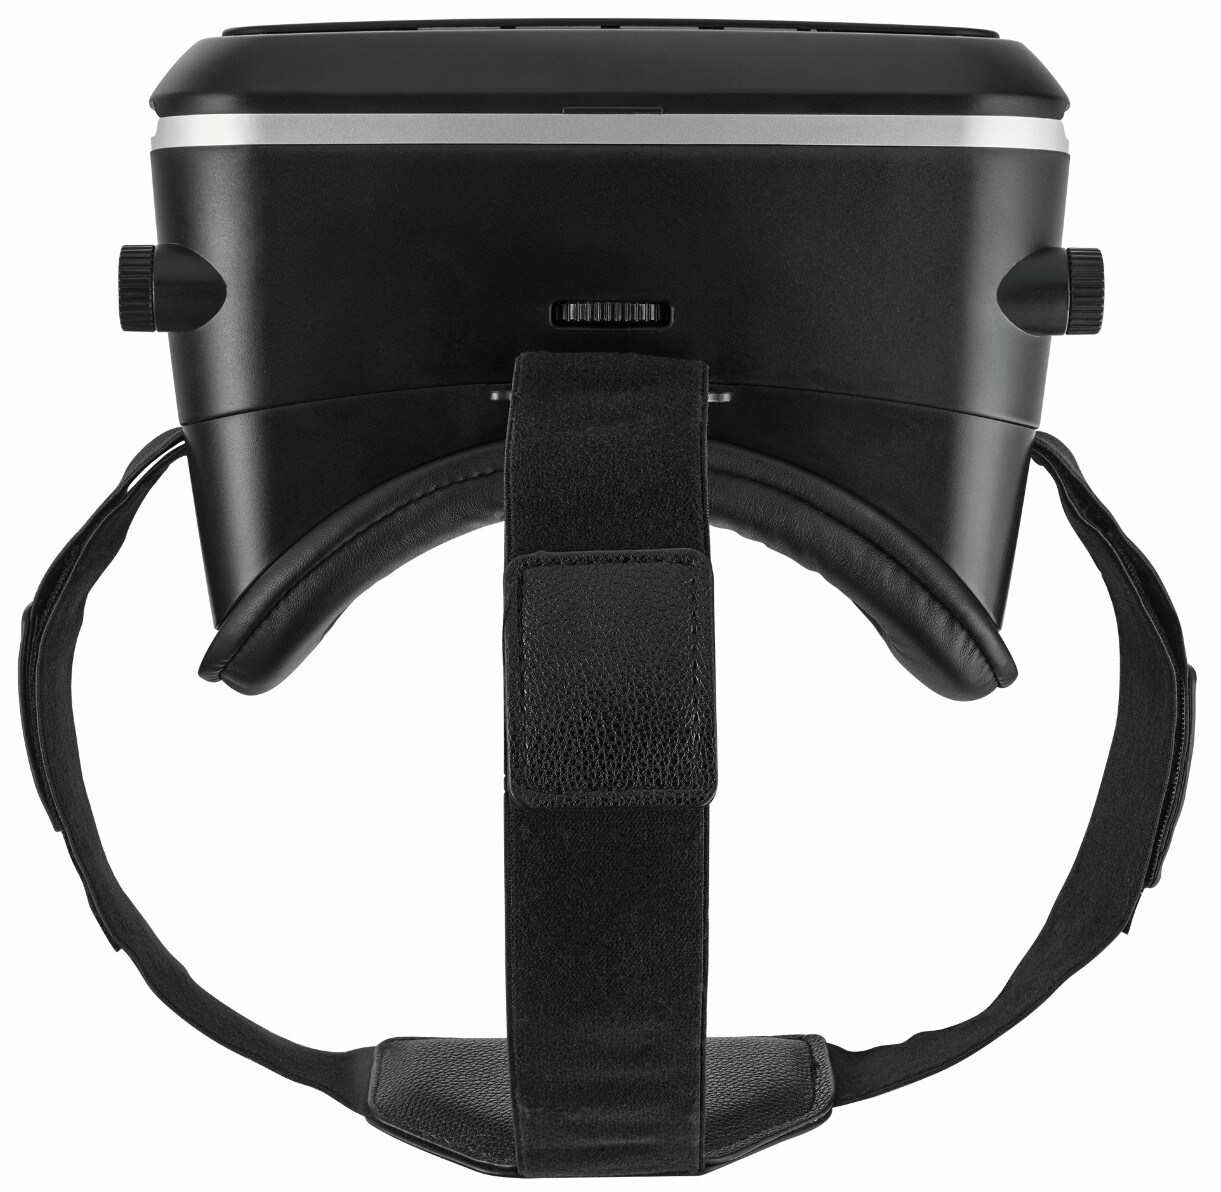 Exos 3D VR-briller for smarttelefoner - VR gaming - Elkjøp